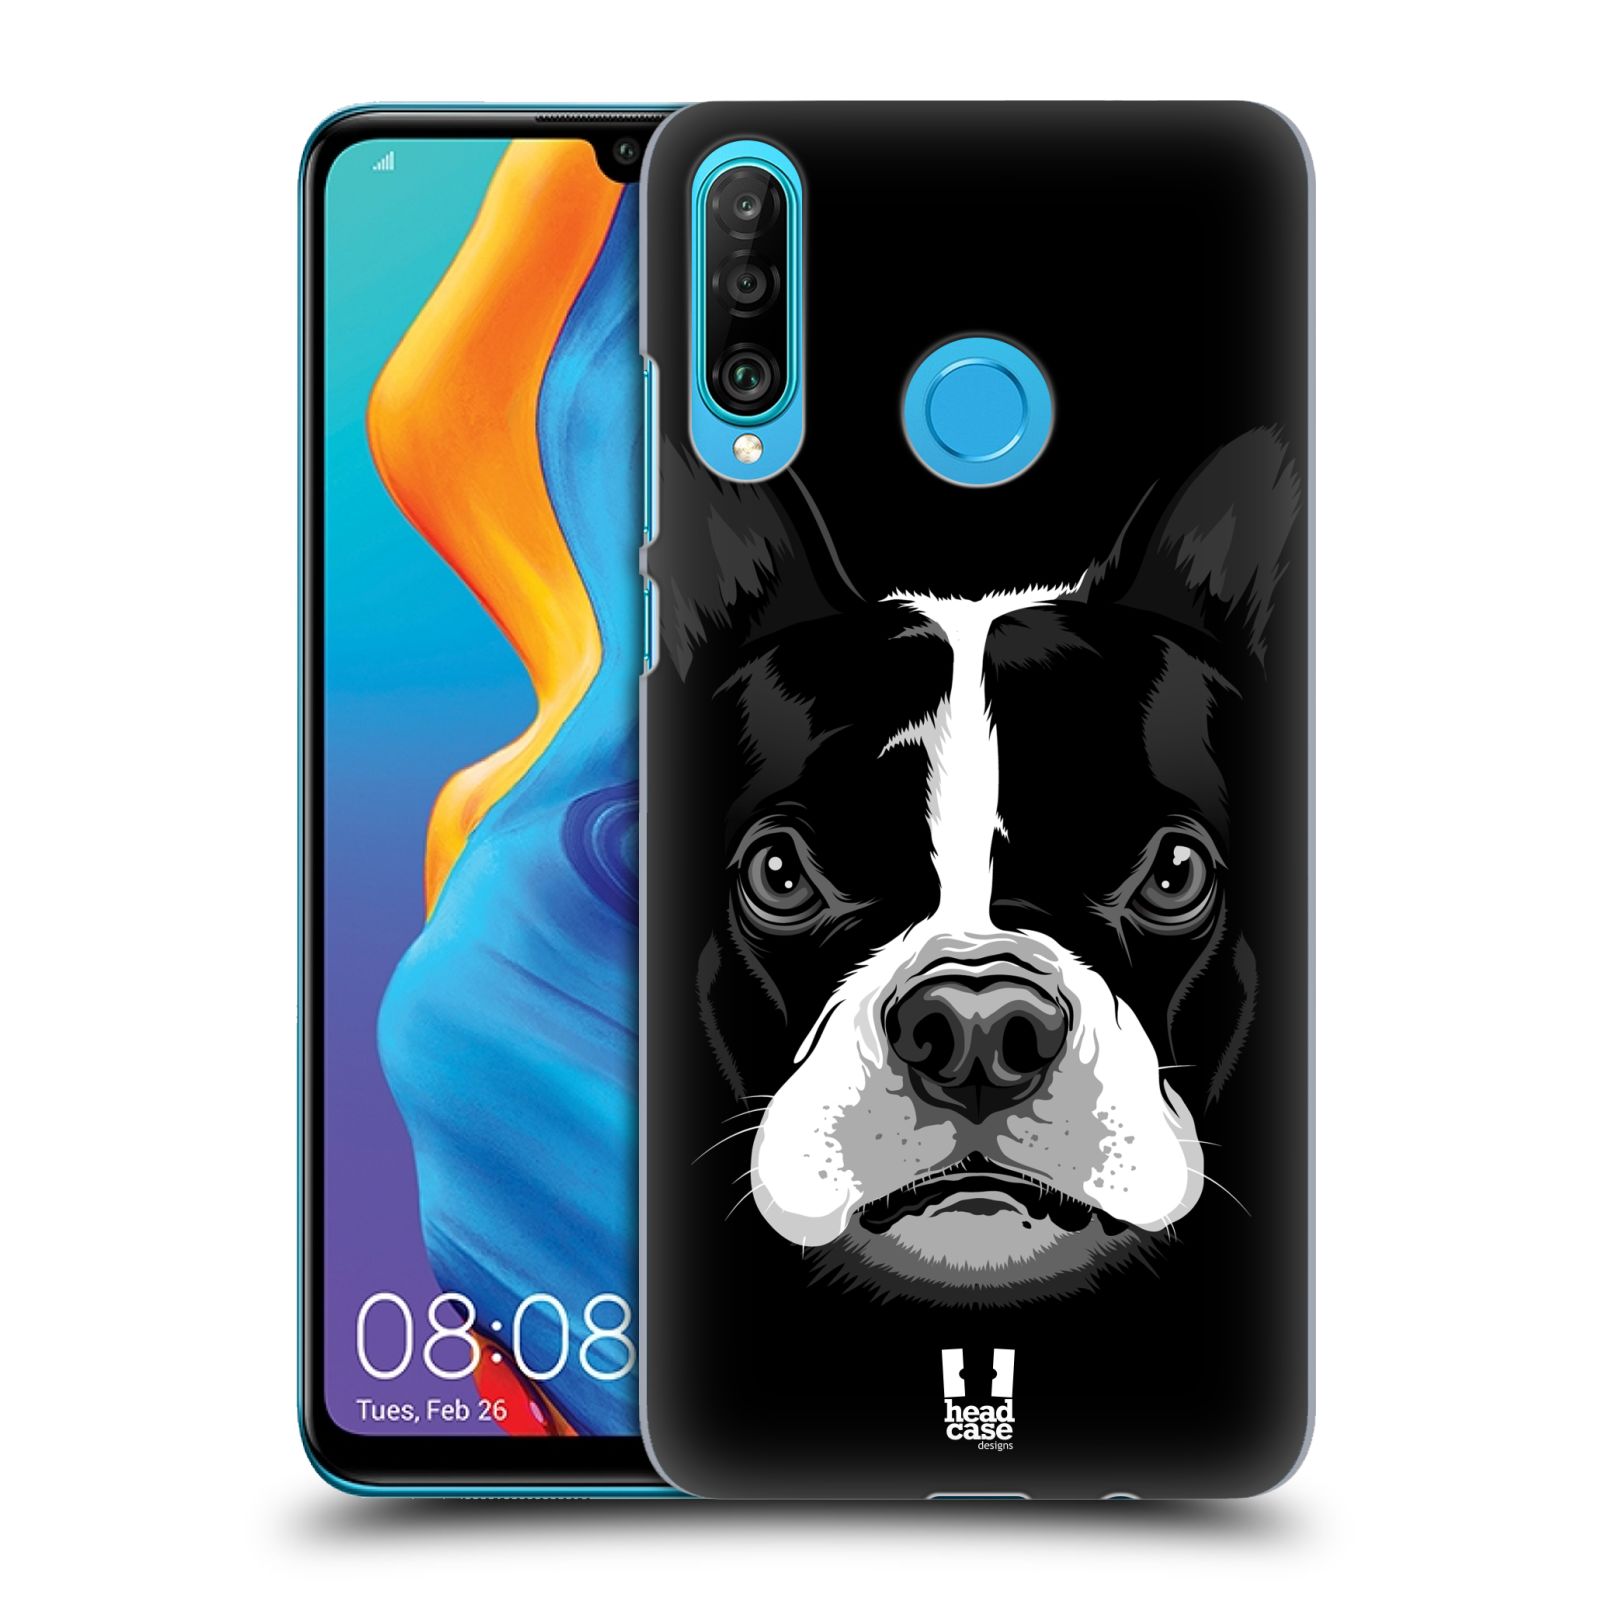 Pouzdro na mobil Huawei P30 LITE - HEAD CASE - vzor Zvíře kreslená tvář 2 buldok